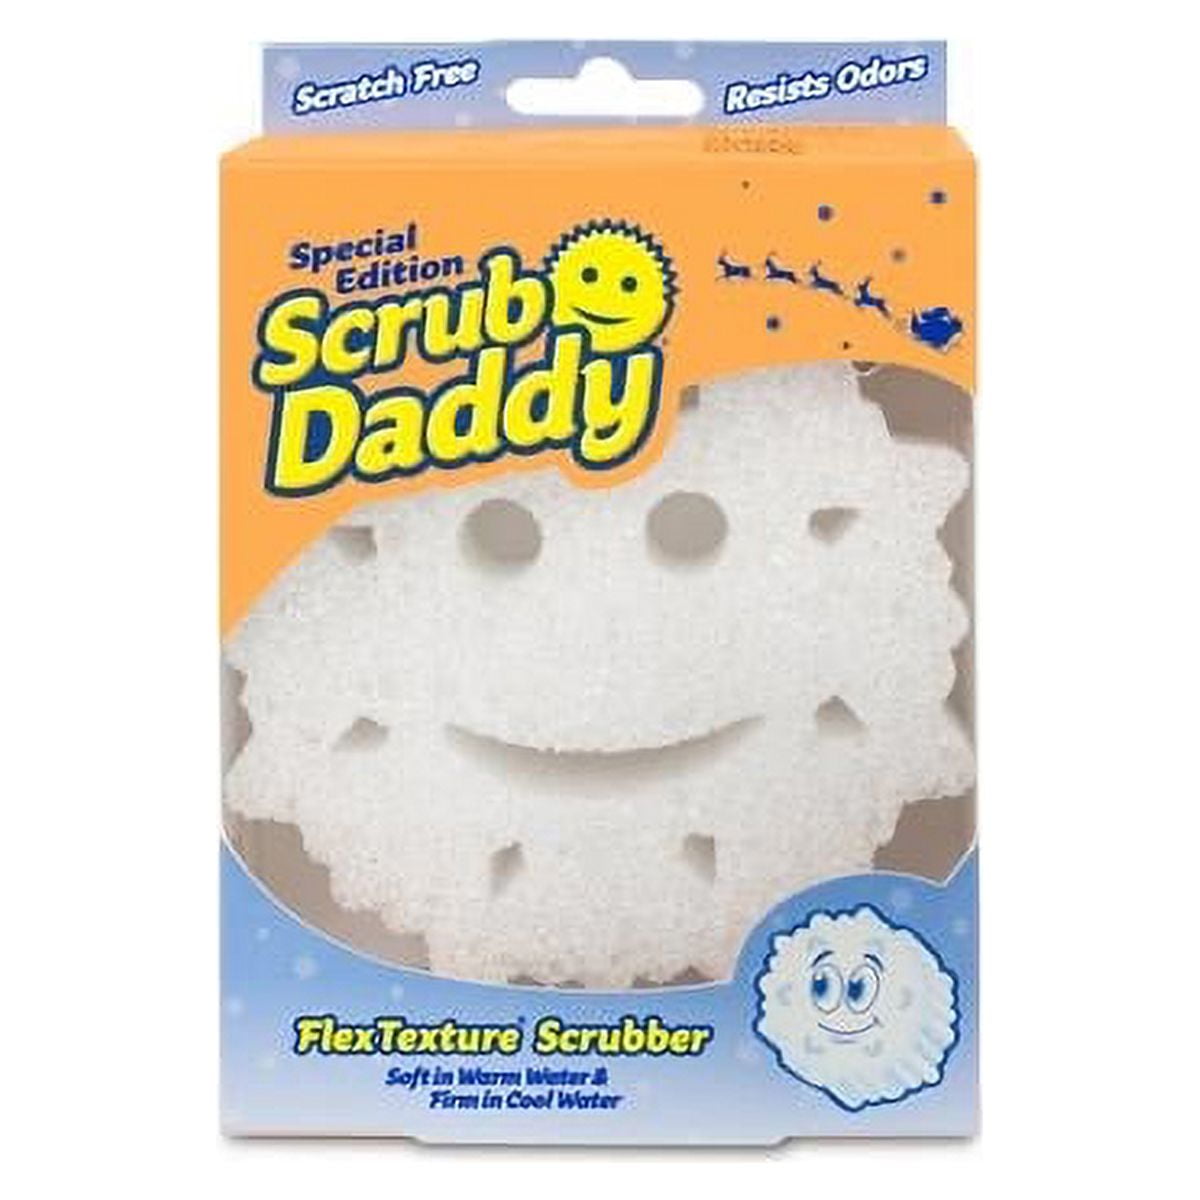 Shapes of Scrub Daddy's Past – Scrub Daddy